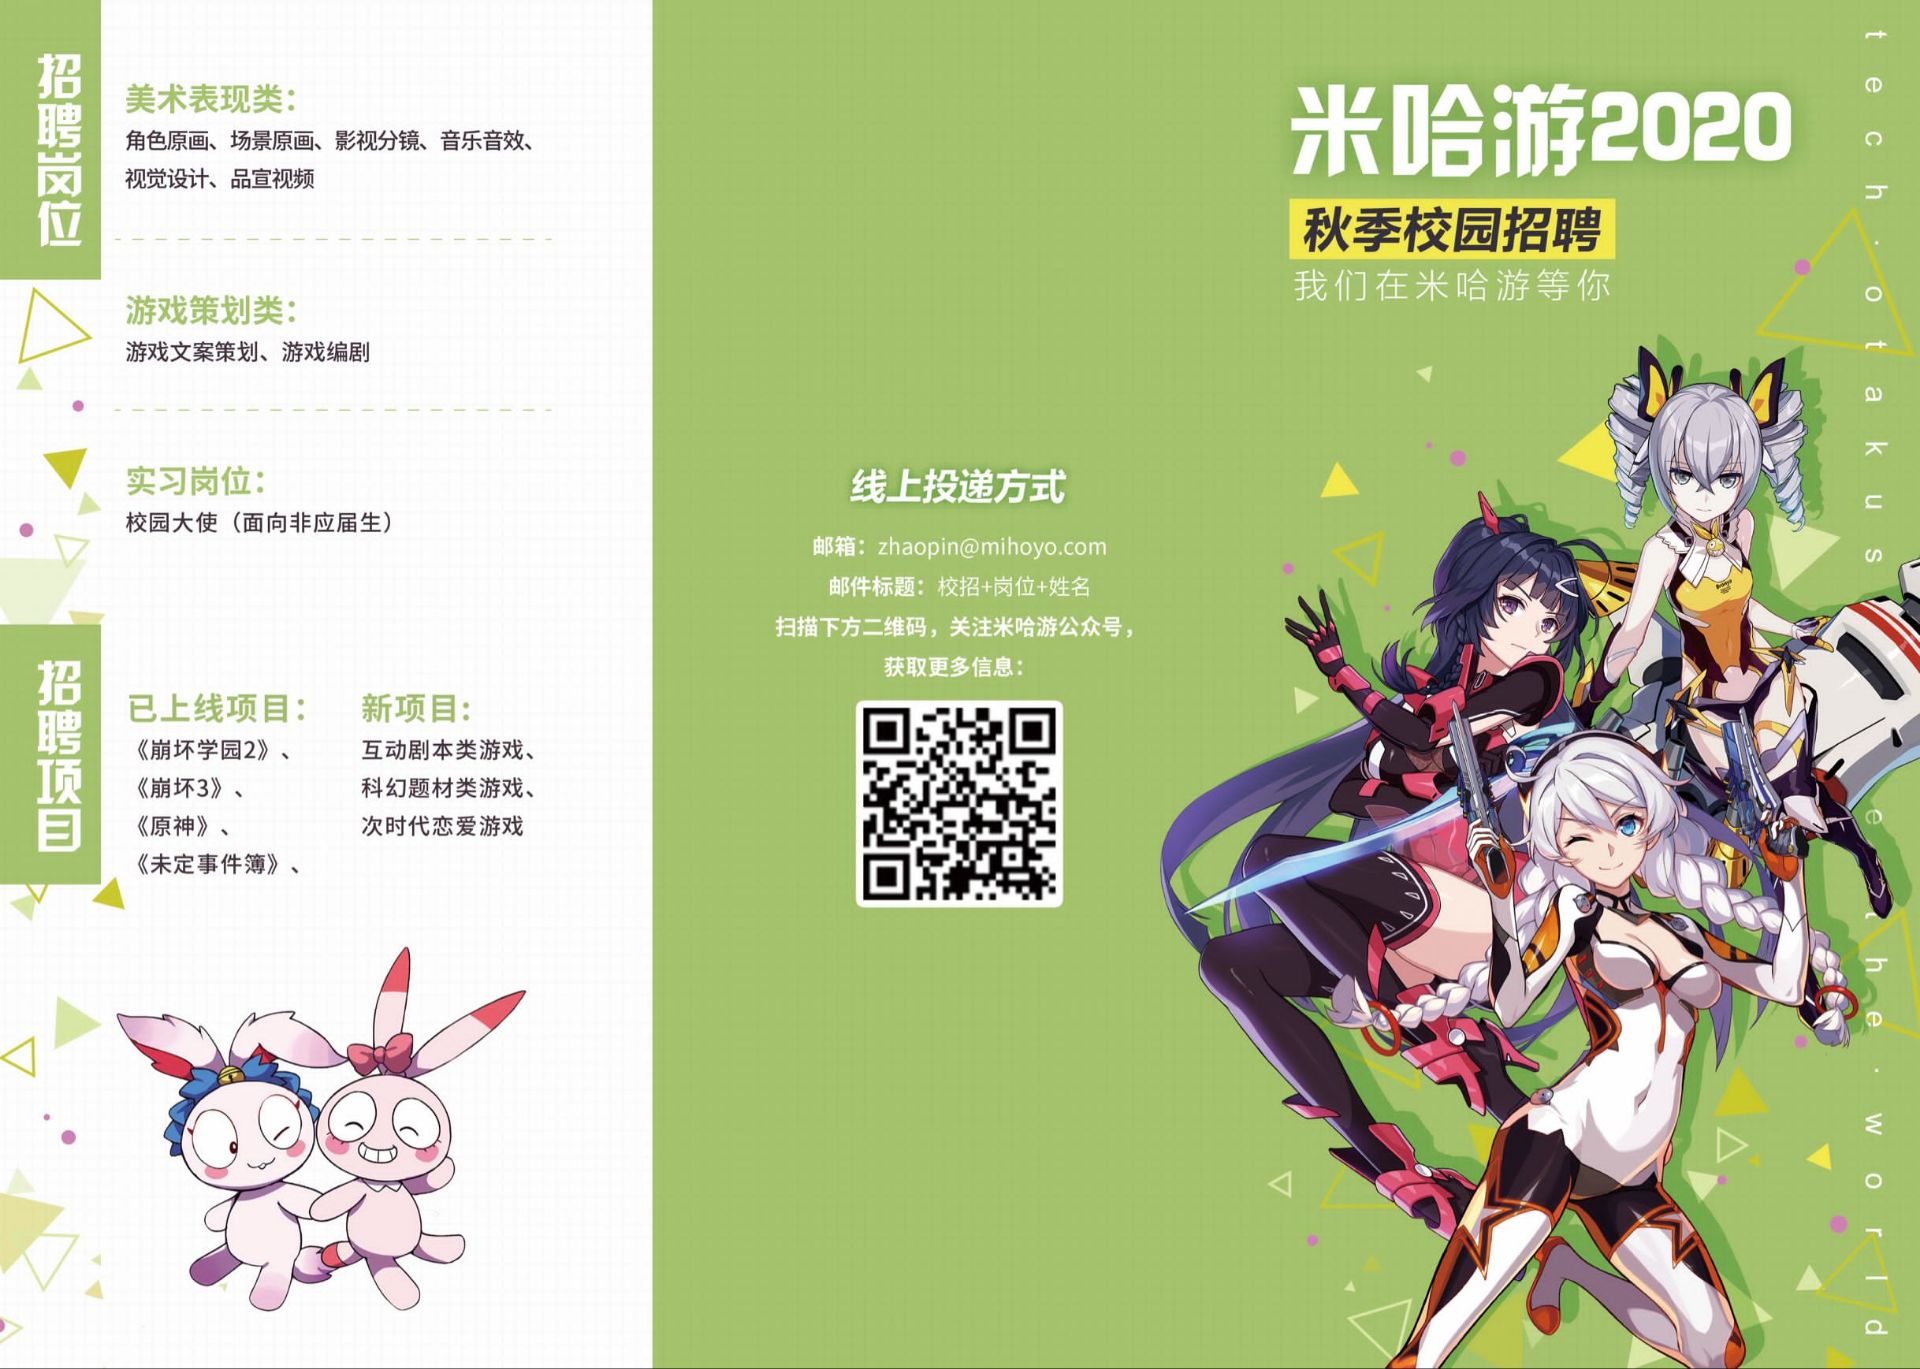 劲爆消息米哈游在北京电影学院的宣传手册上首次公布开发中的三款新